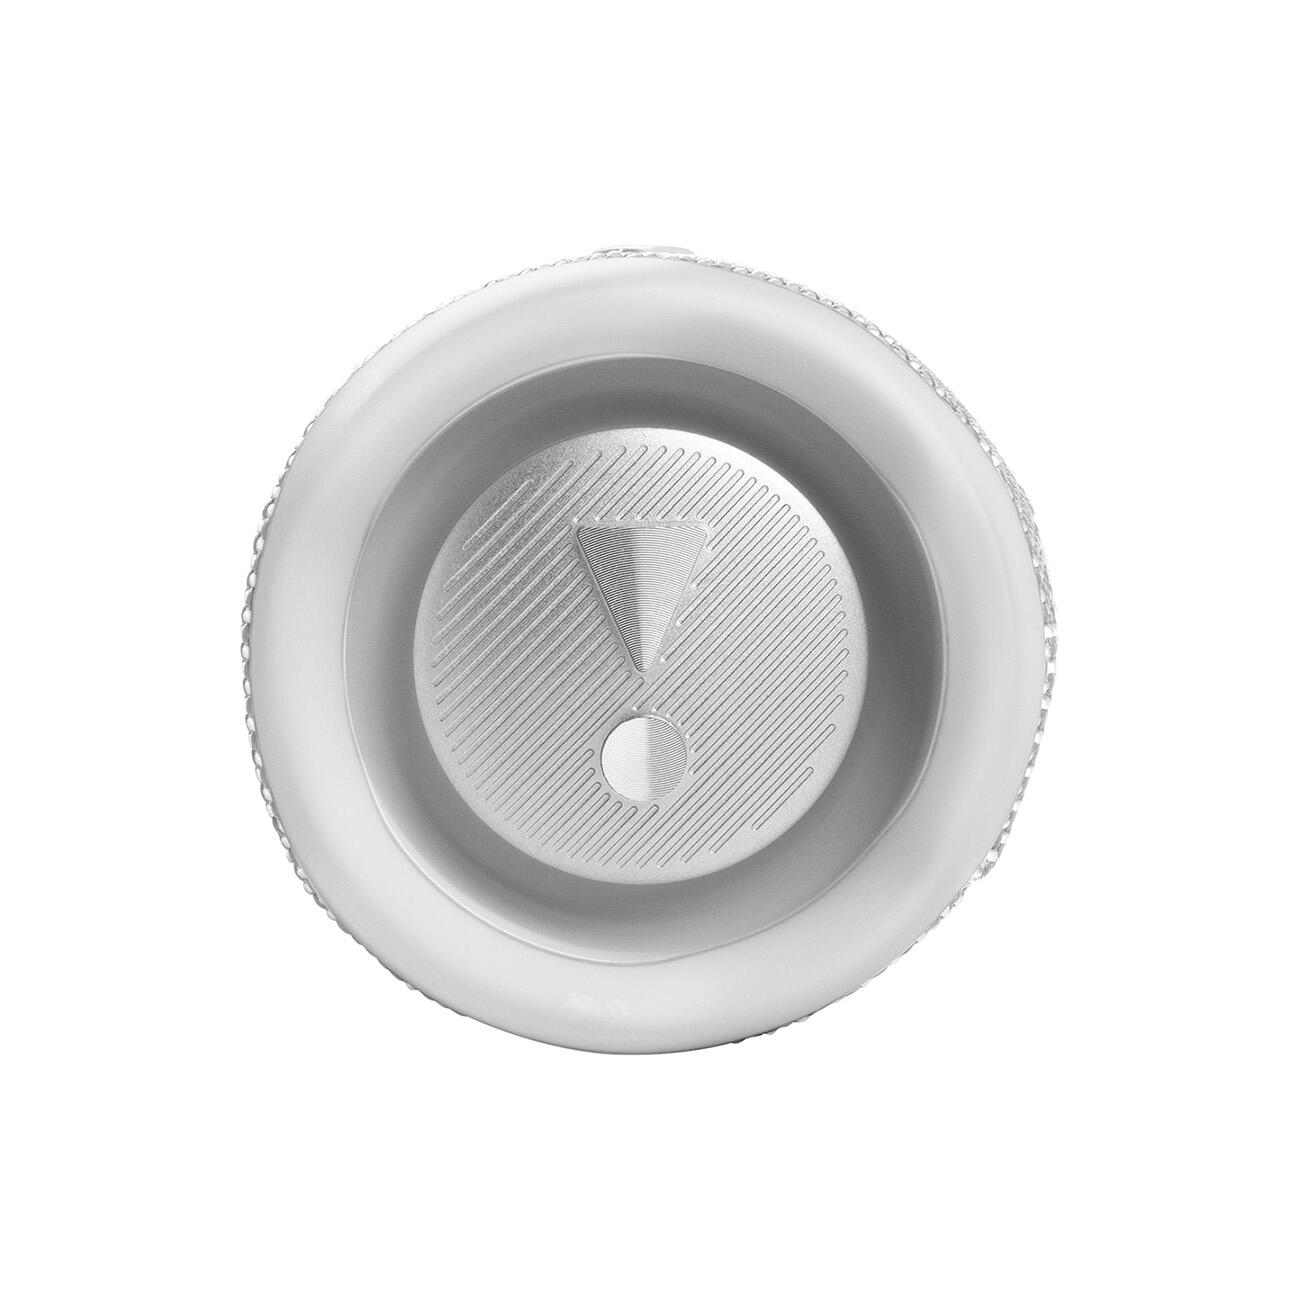 JBL Flip 6 Portable Waterproof and Dustproof Bluetooth Speaker 4/7